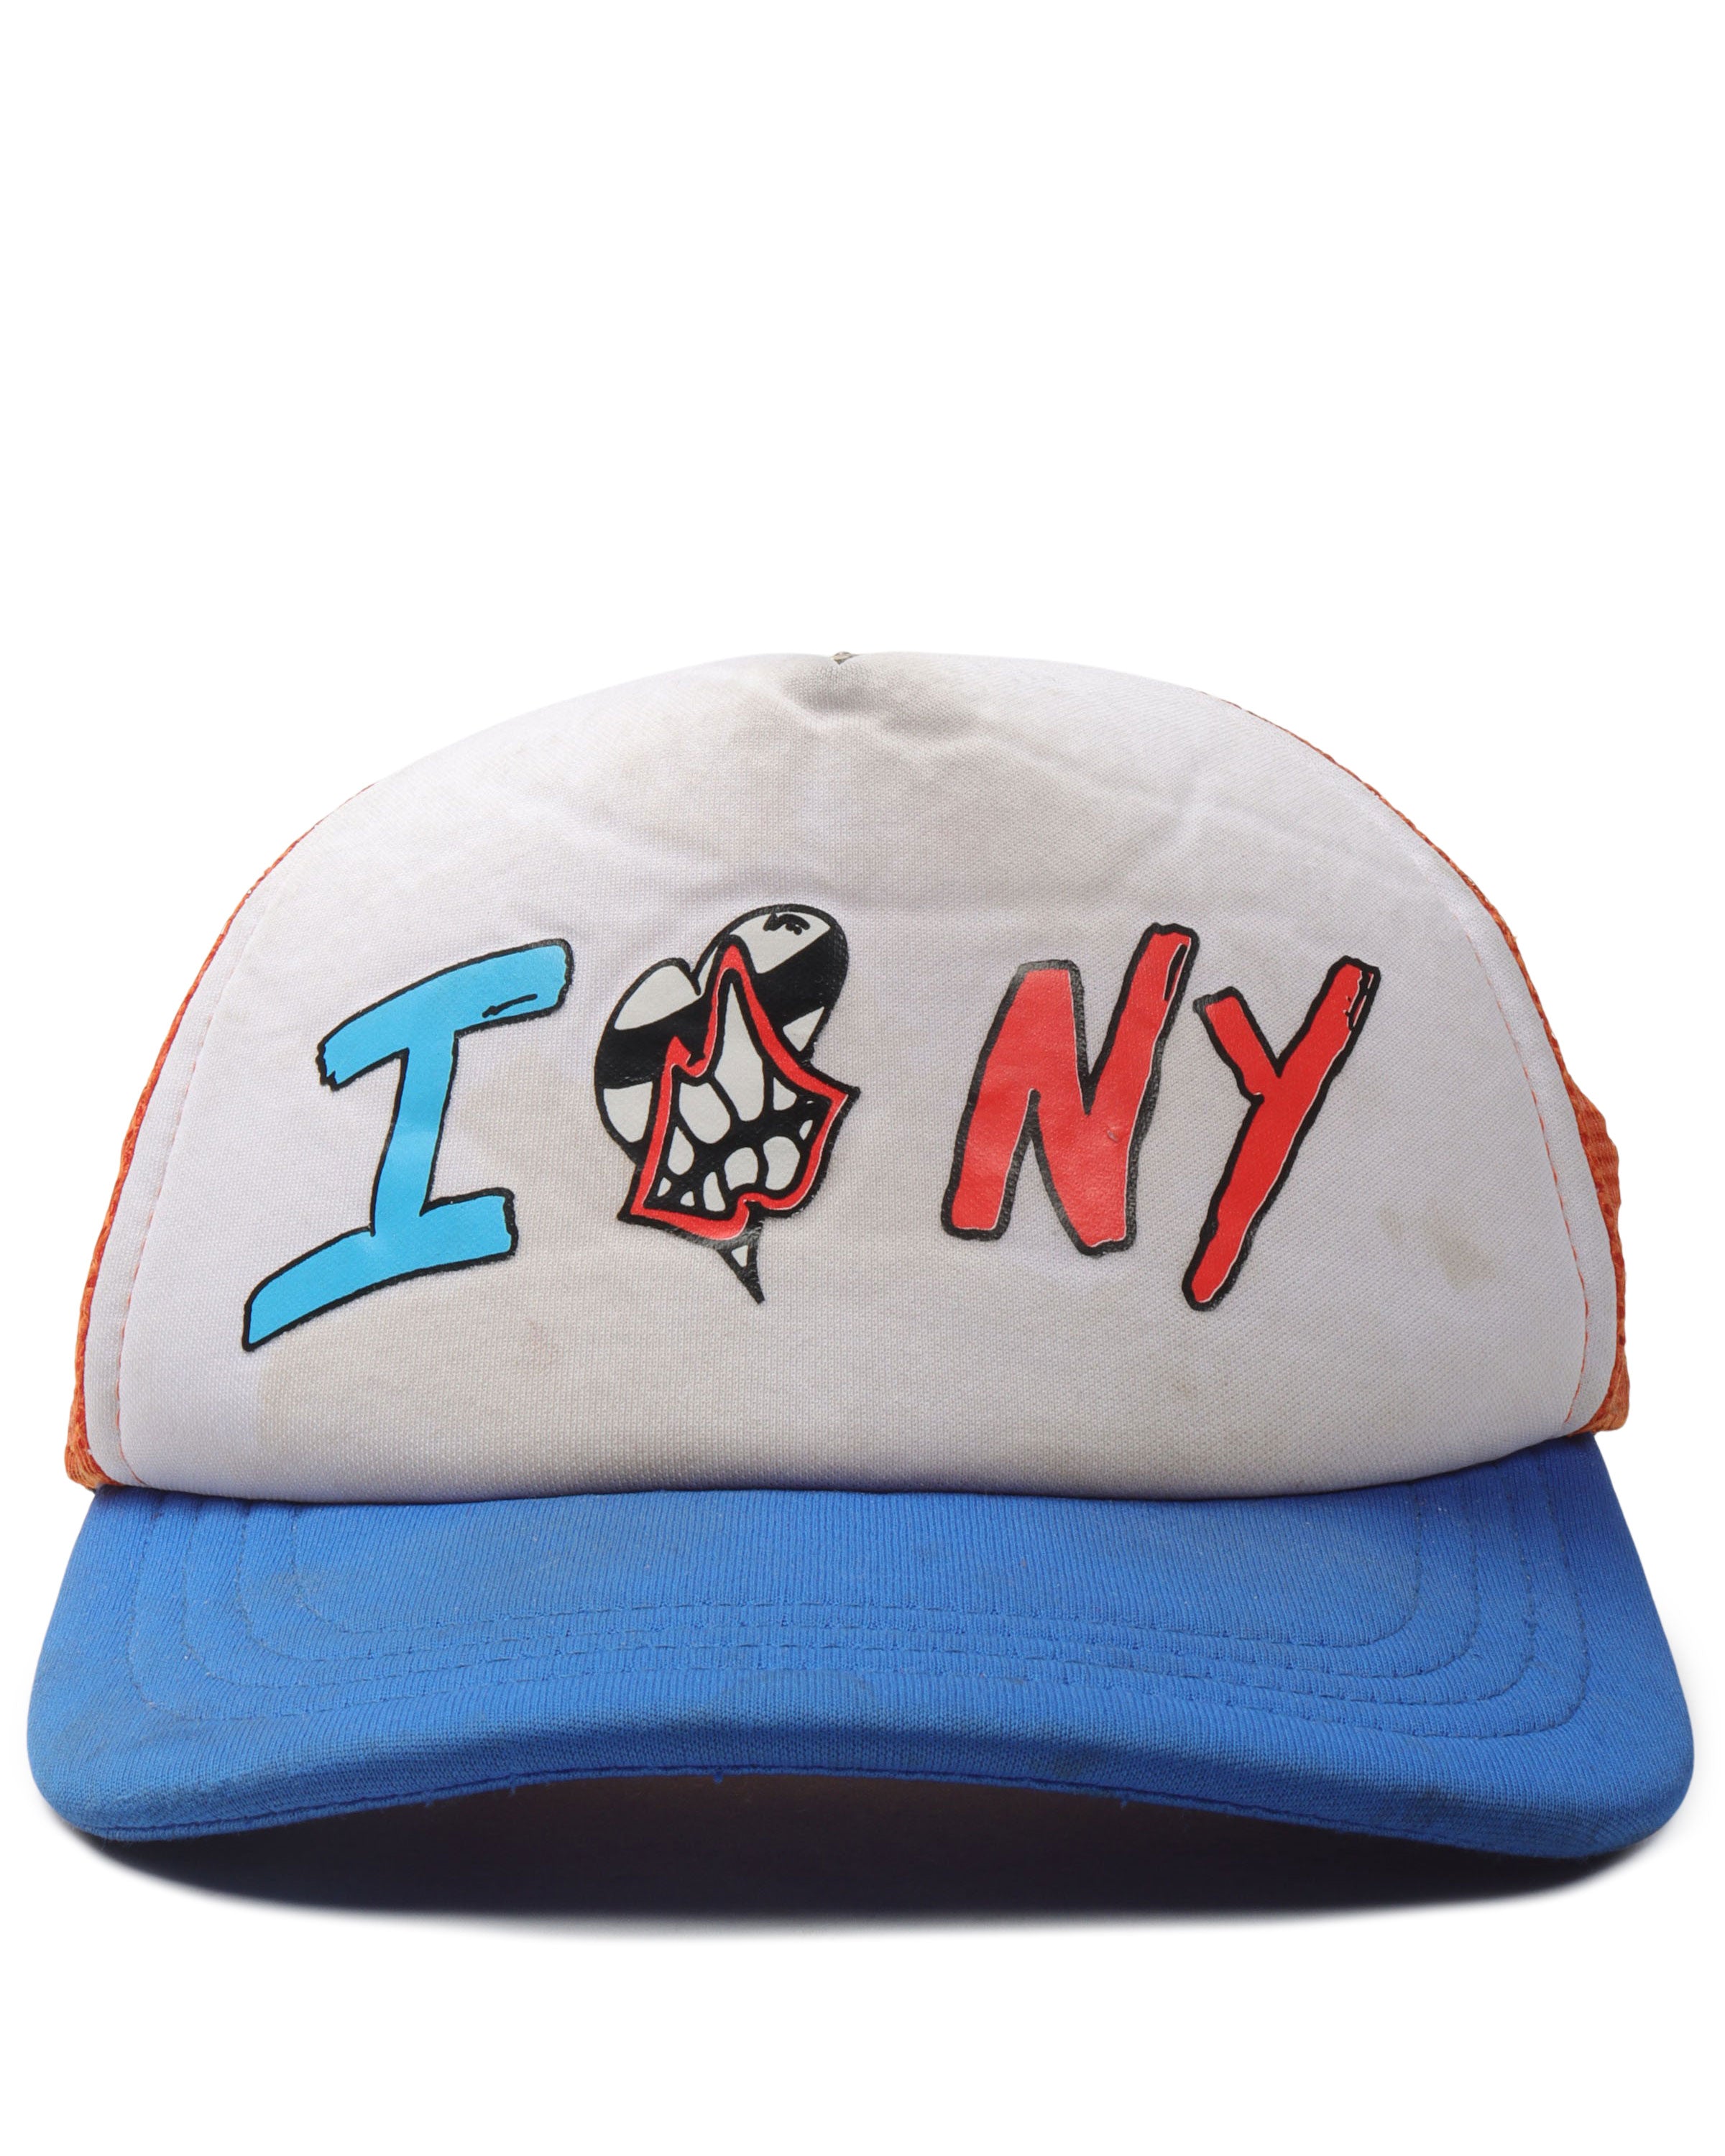 I <3 NY Trucker Hat